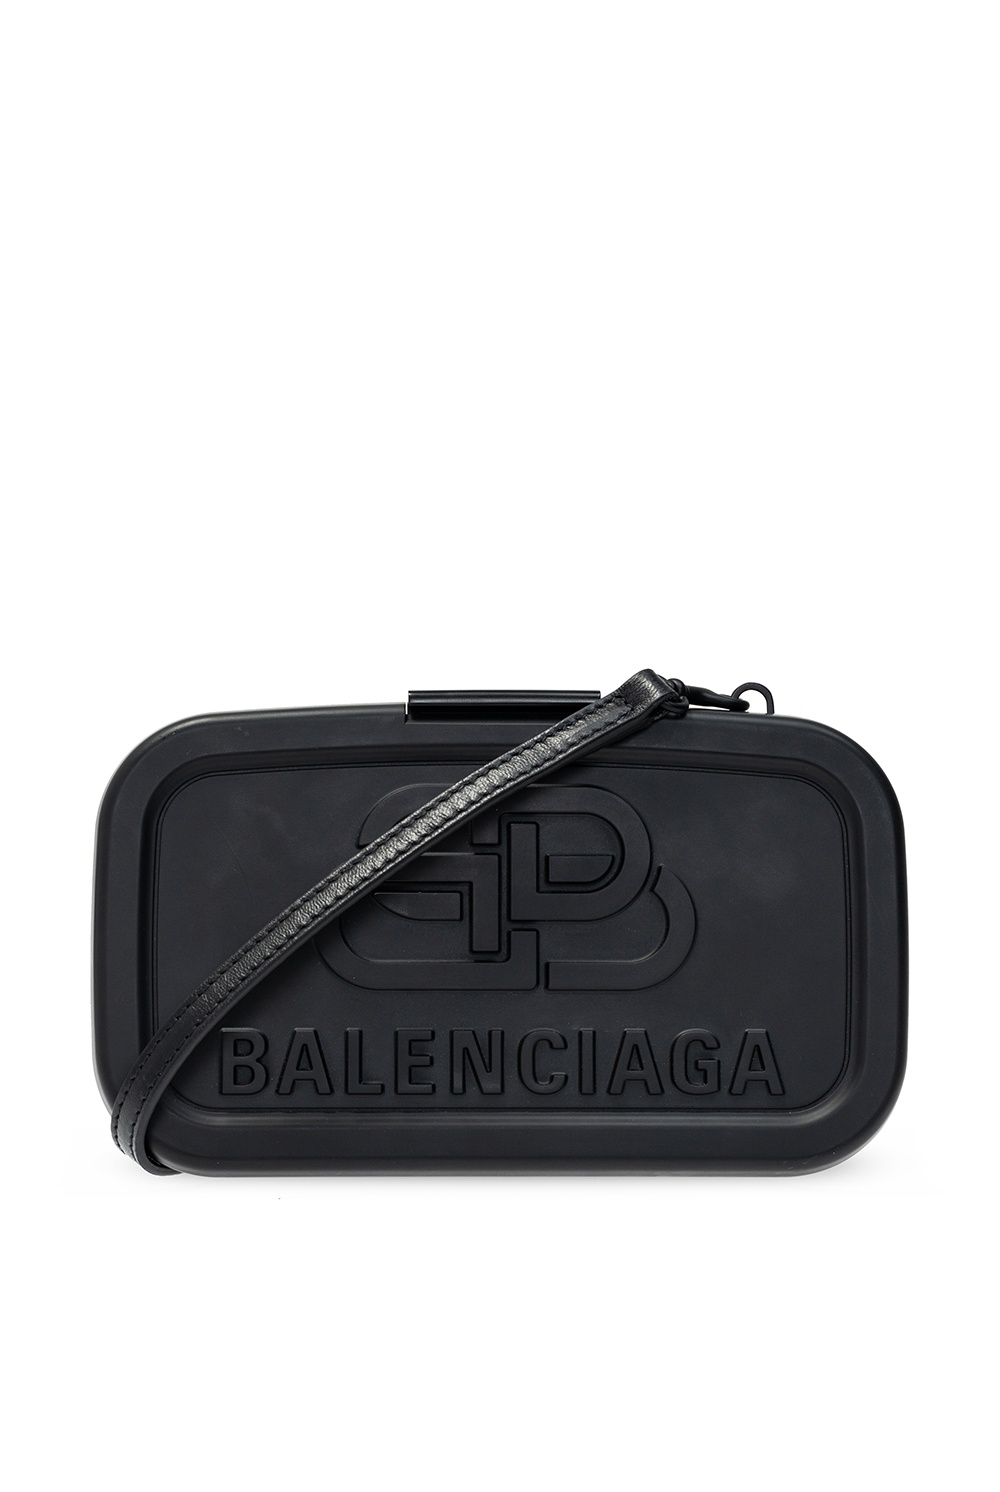 Balenciaga Lunch Box Black Small Shoulder Bag 638207 – Queen Bee